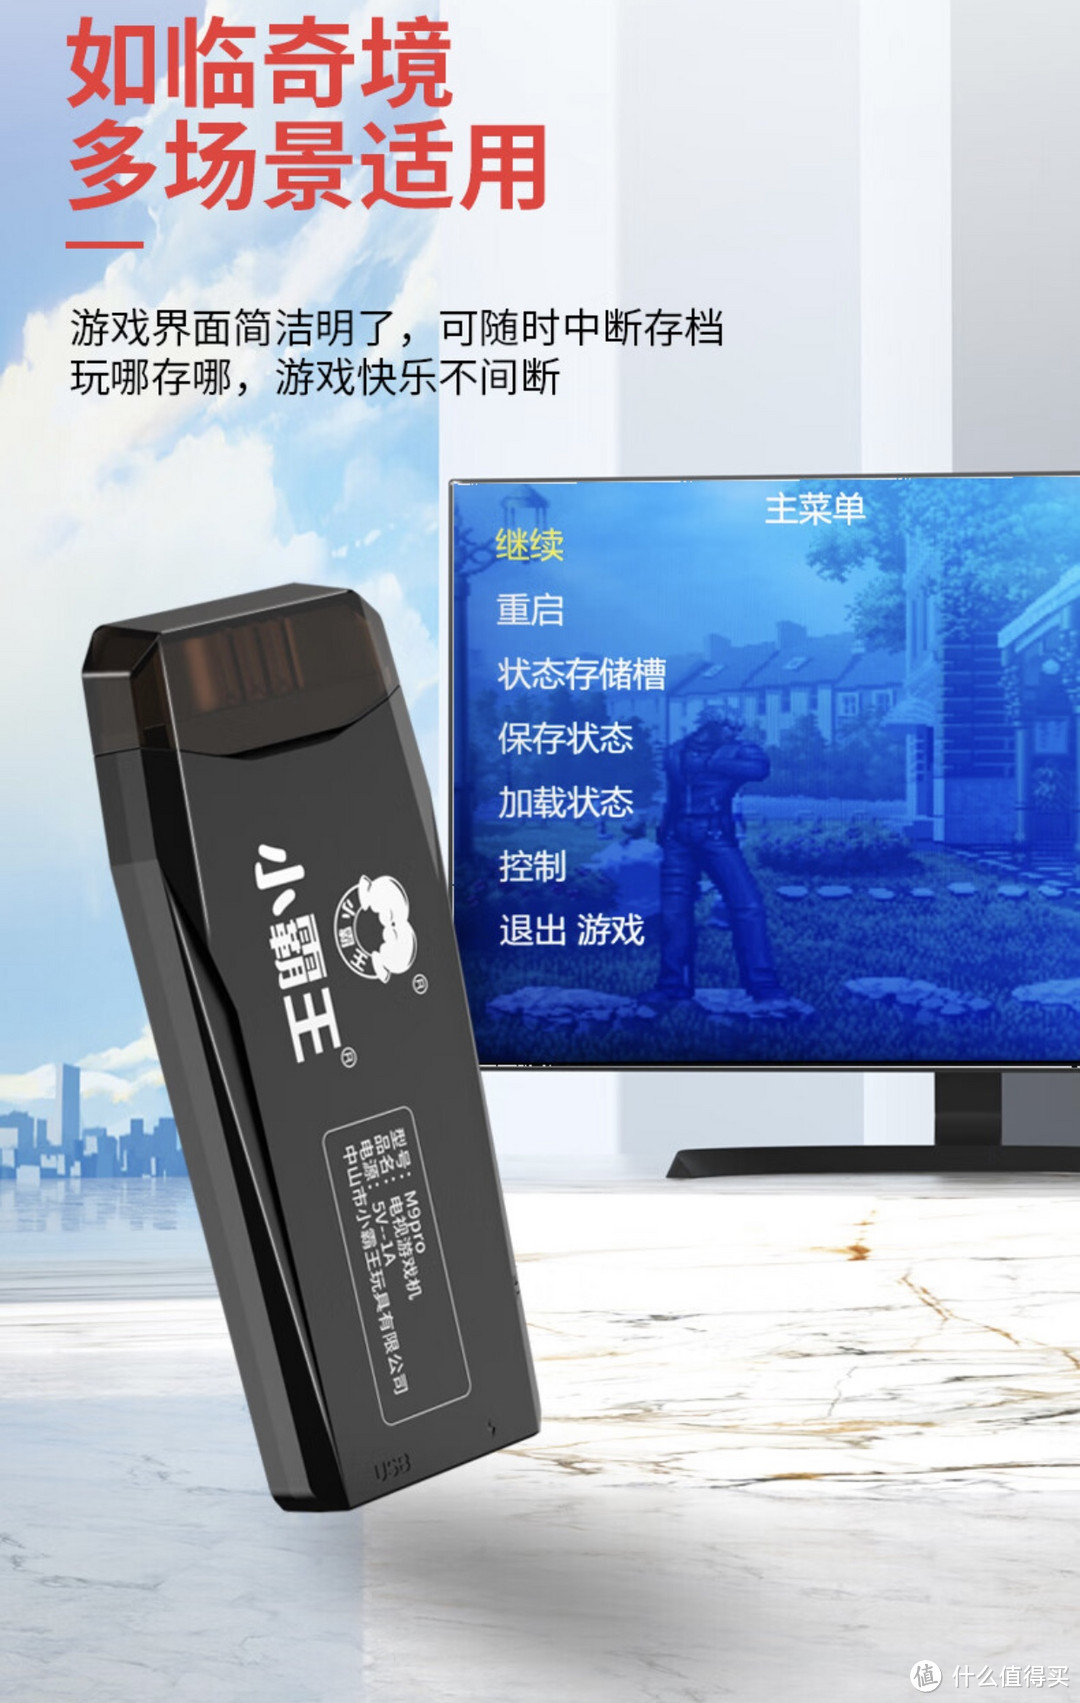 小霸王M9pro游戏机PSP电视双人无线手柄摇杆家用街机